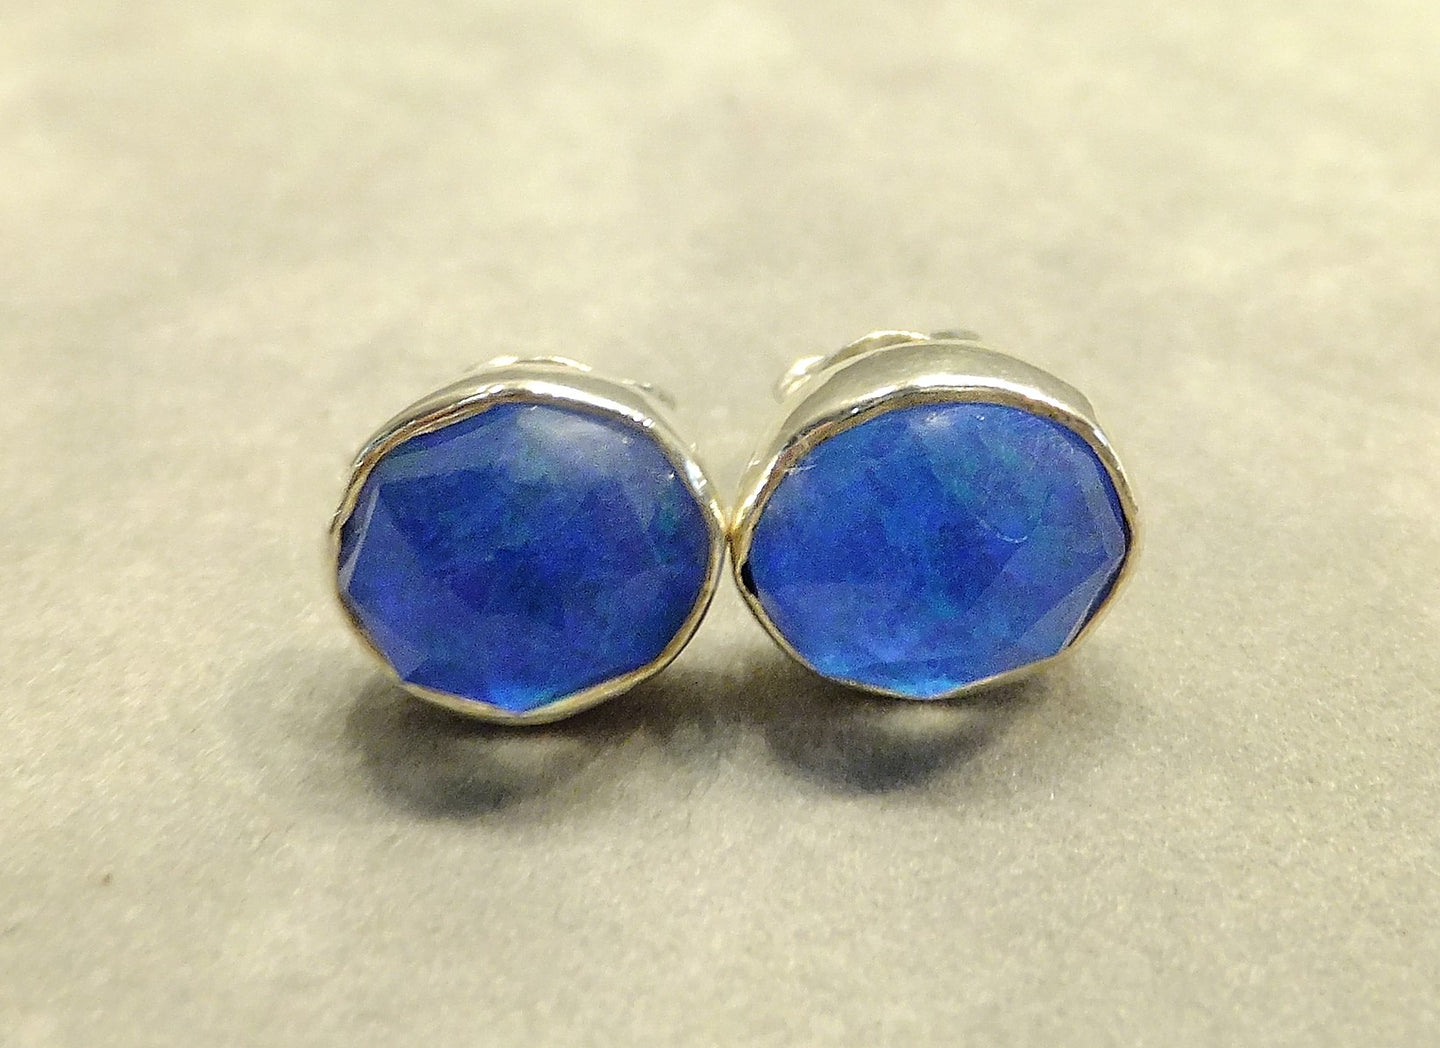 Blue Opalite Stud earrings